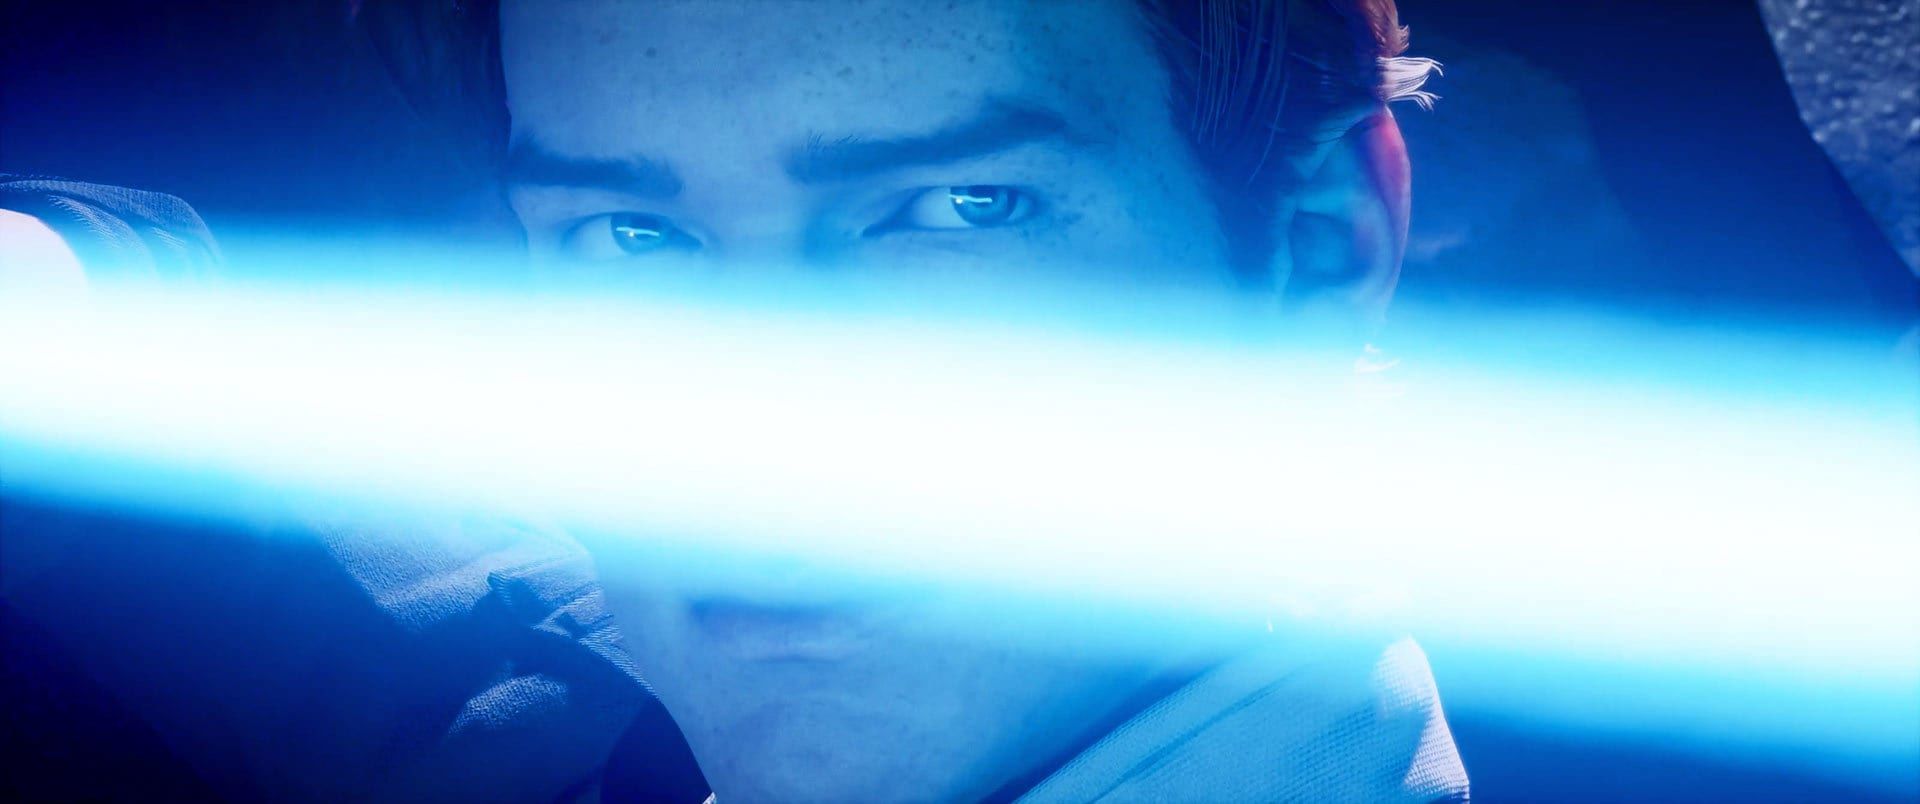 Cal Kestis in Star Wars Jedi Fallen Order